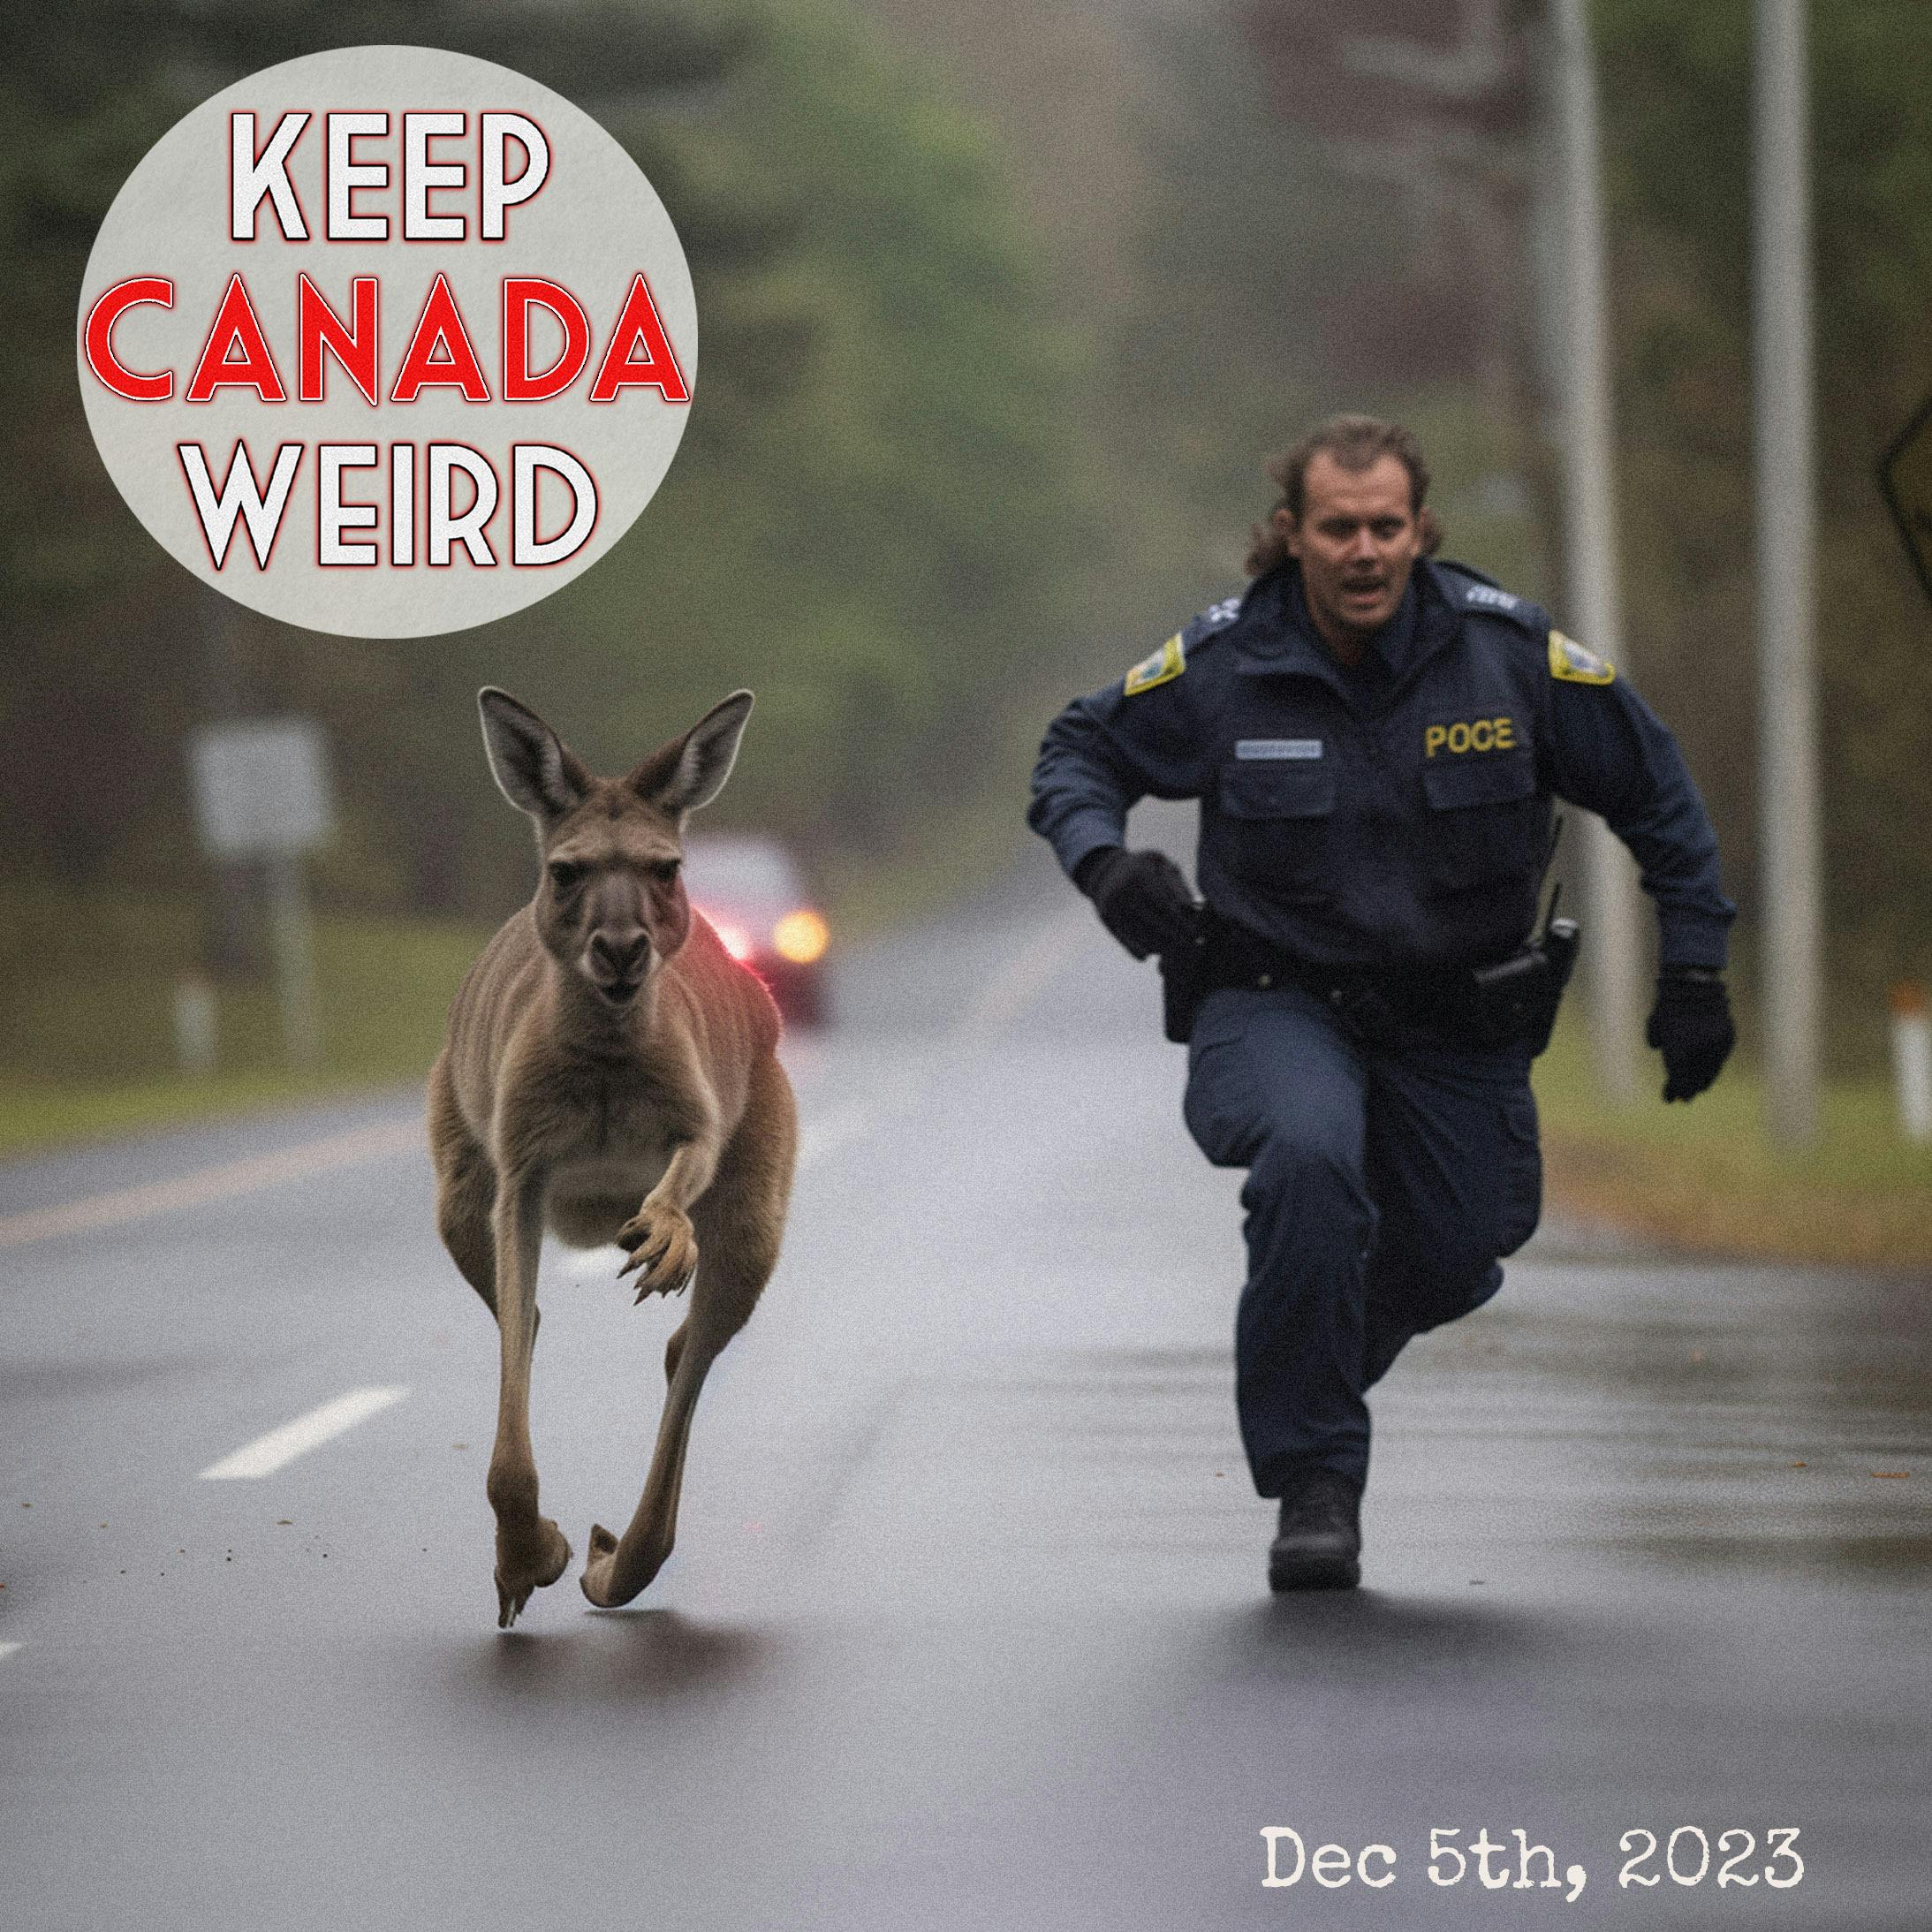 KEEP CANADA WEIRD - Dec 5th, 2023 - MANHUNT: Kangaroo, TOPSECRET ROMANCE SCAM, stolen cat, and space rocks